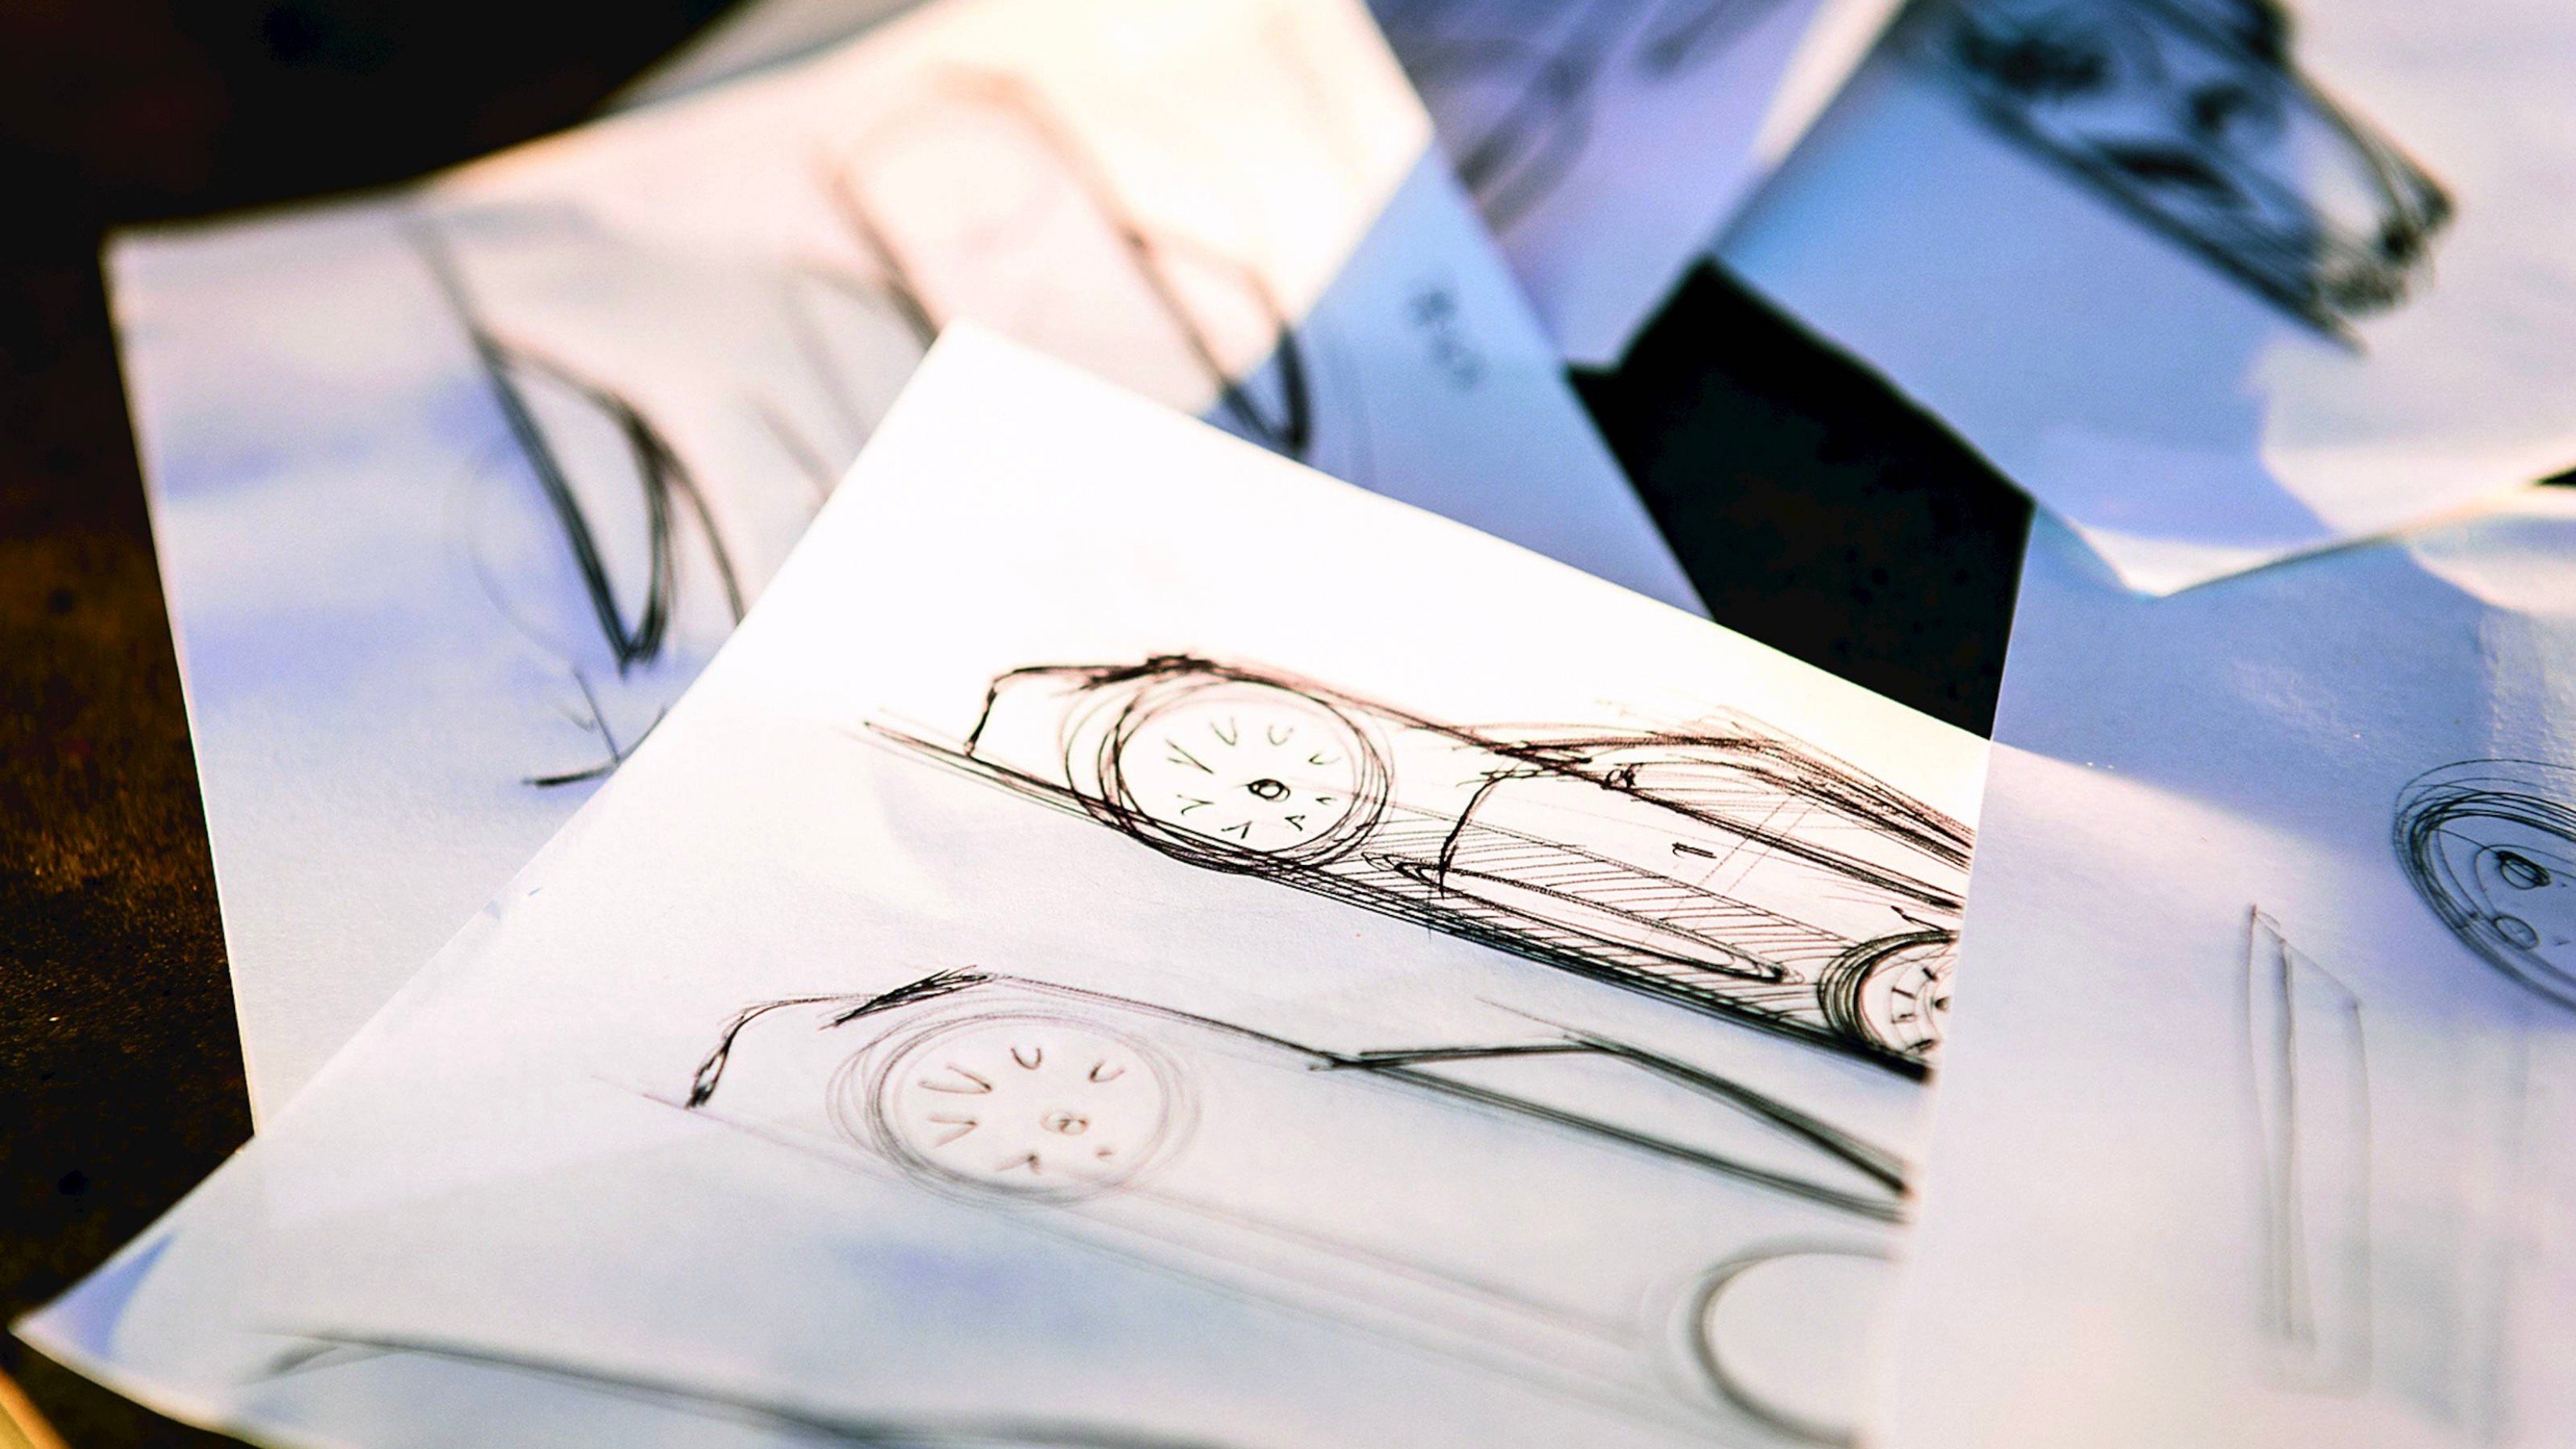 Porsche ist dabei, seine geheimen Skizzenbücher bei South by Southwest zu enthüllen